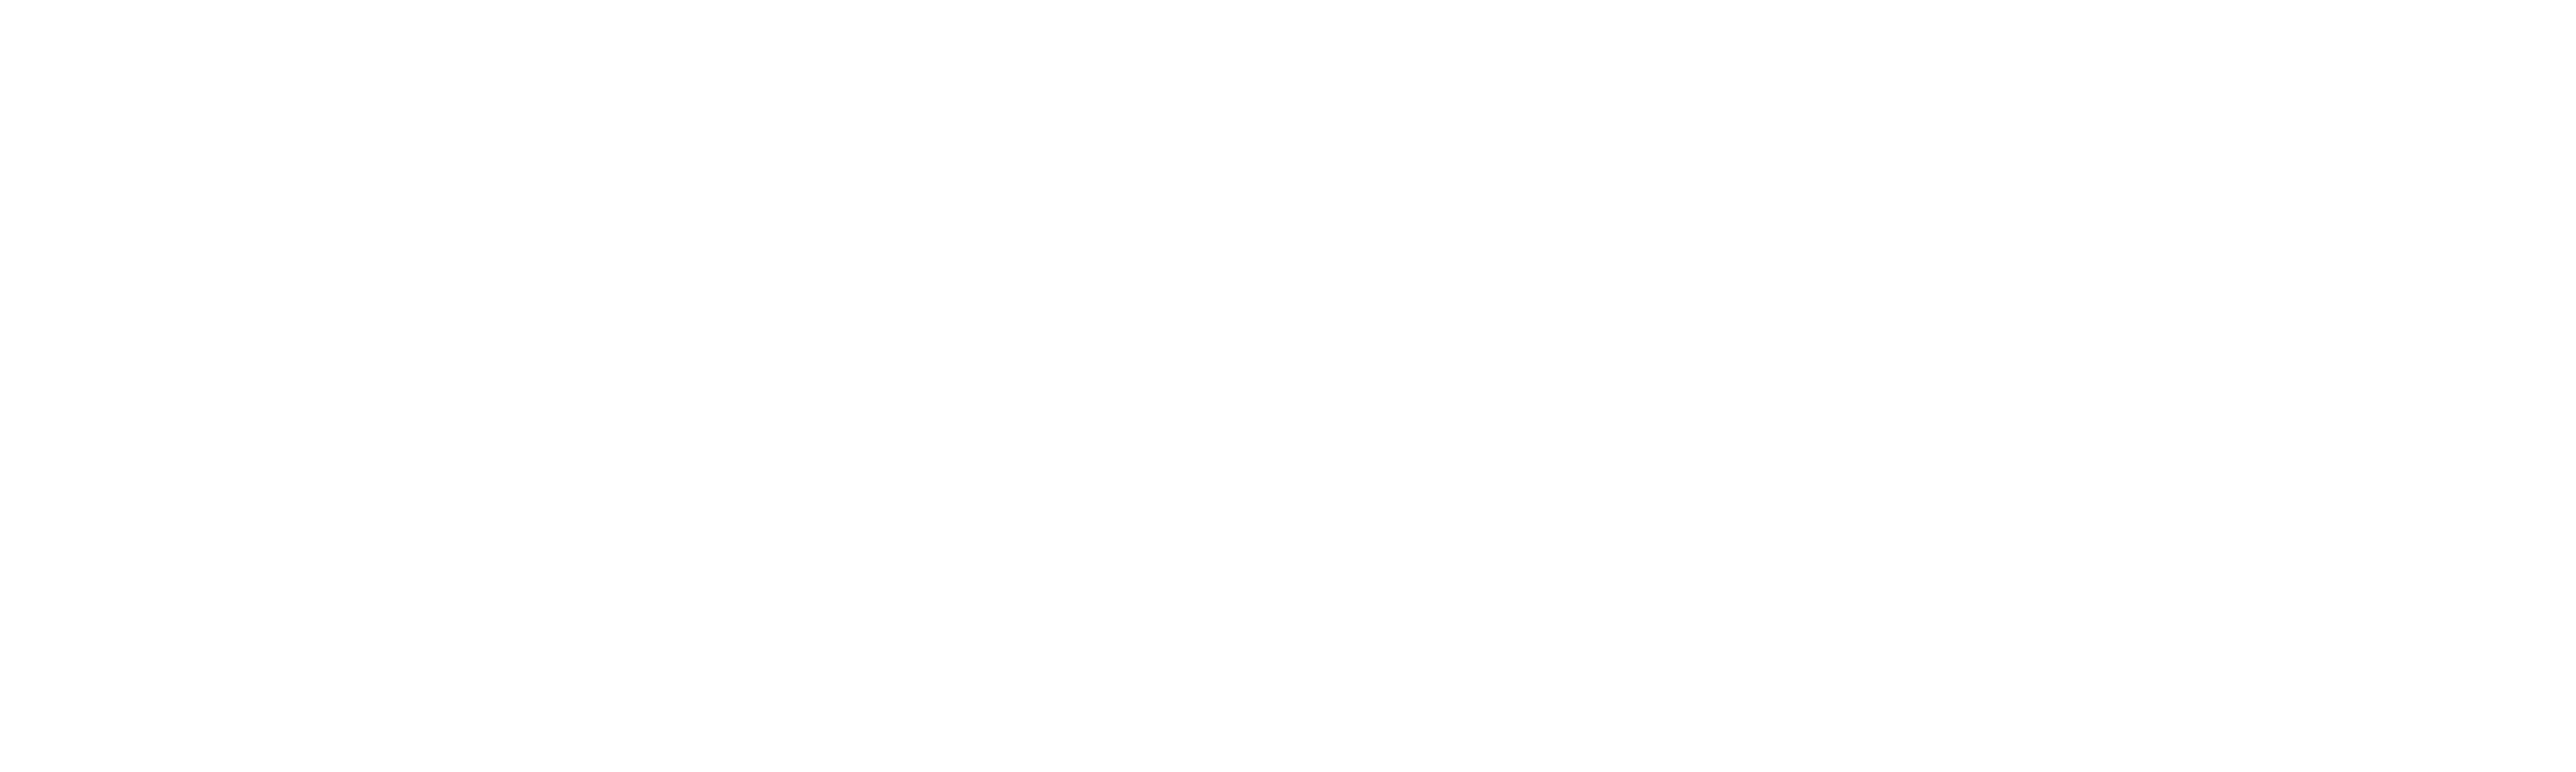 oncodna.ir-درمان ژنتیکی سرطان